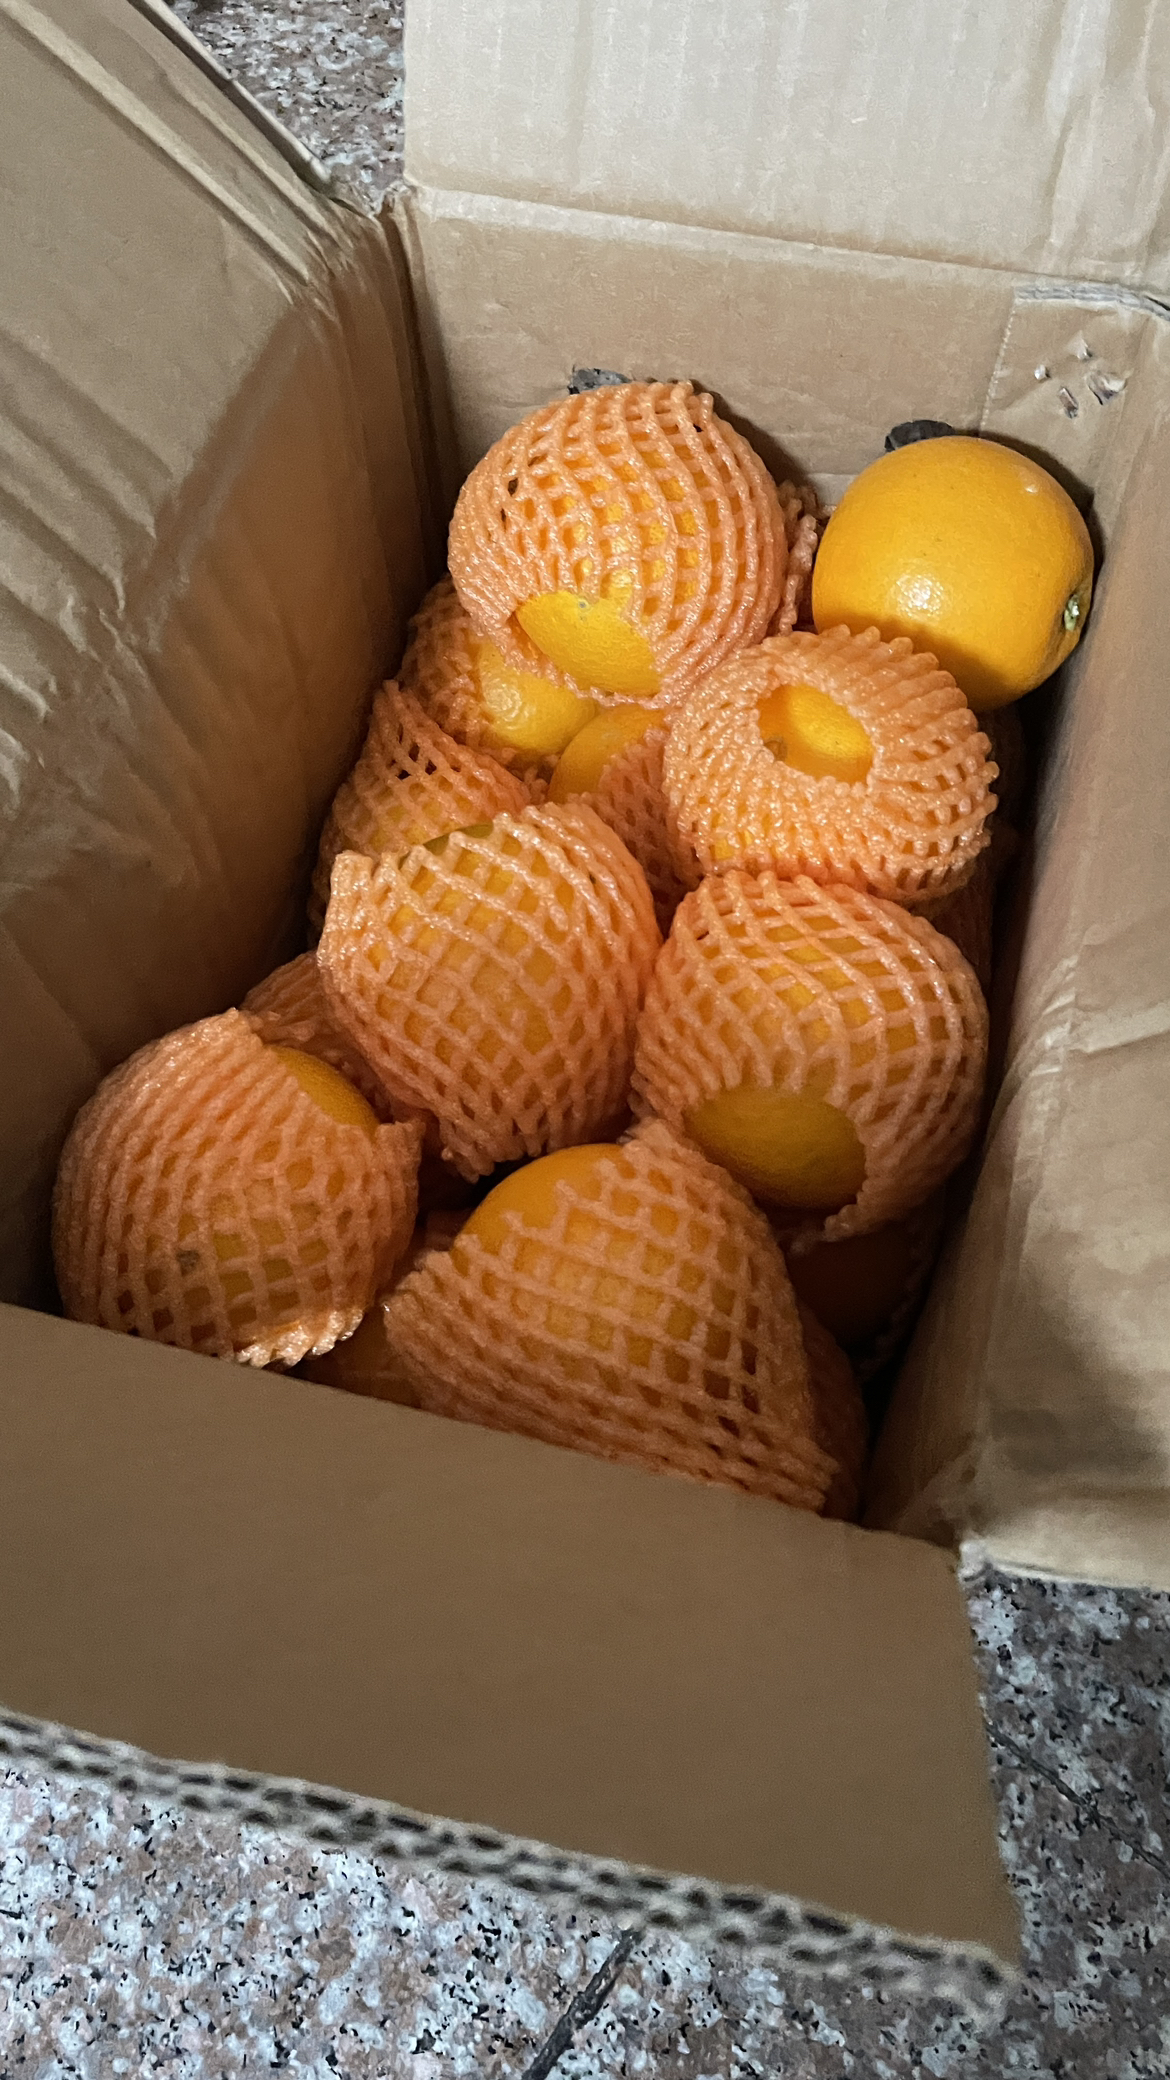 [中华特色]秭归馆 秭归脐橙 伦晚橙 时令鲜橙5斤装 果径55-65mm 果园直发 华中晒单图